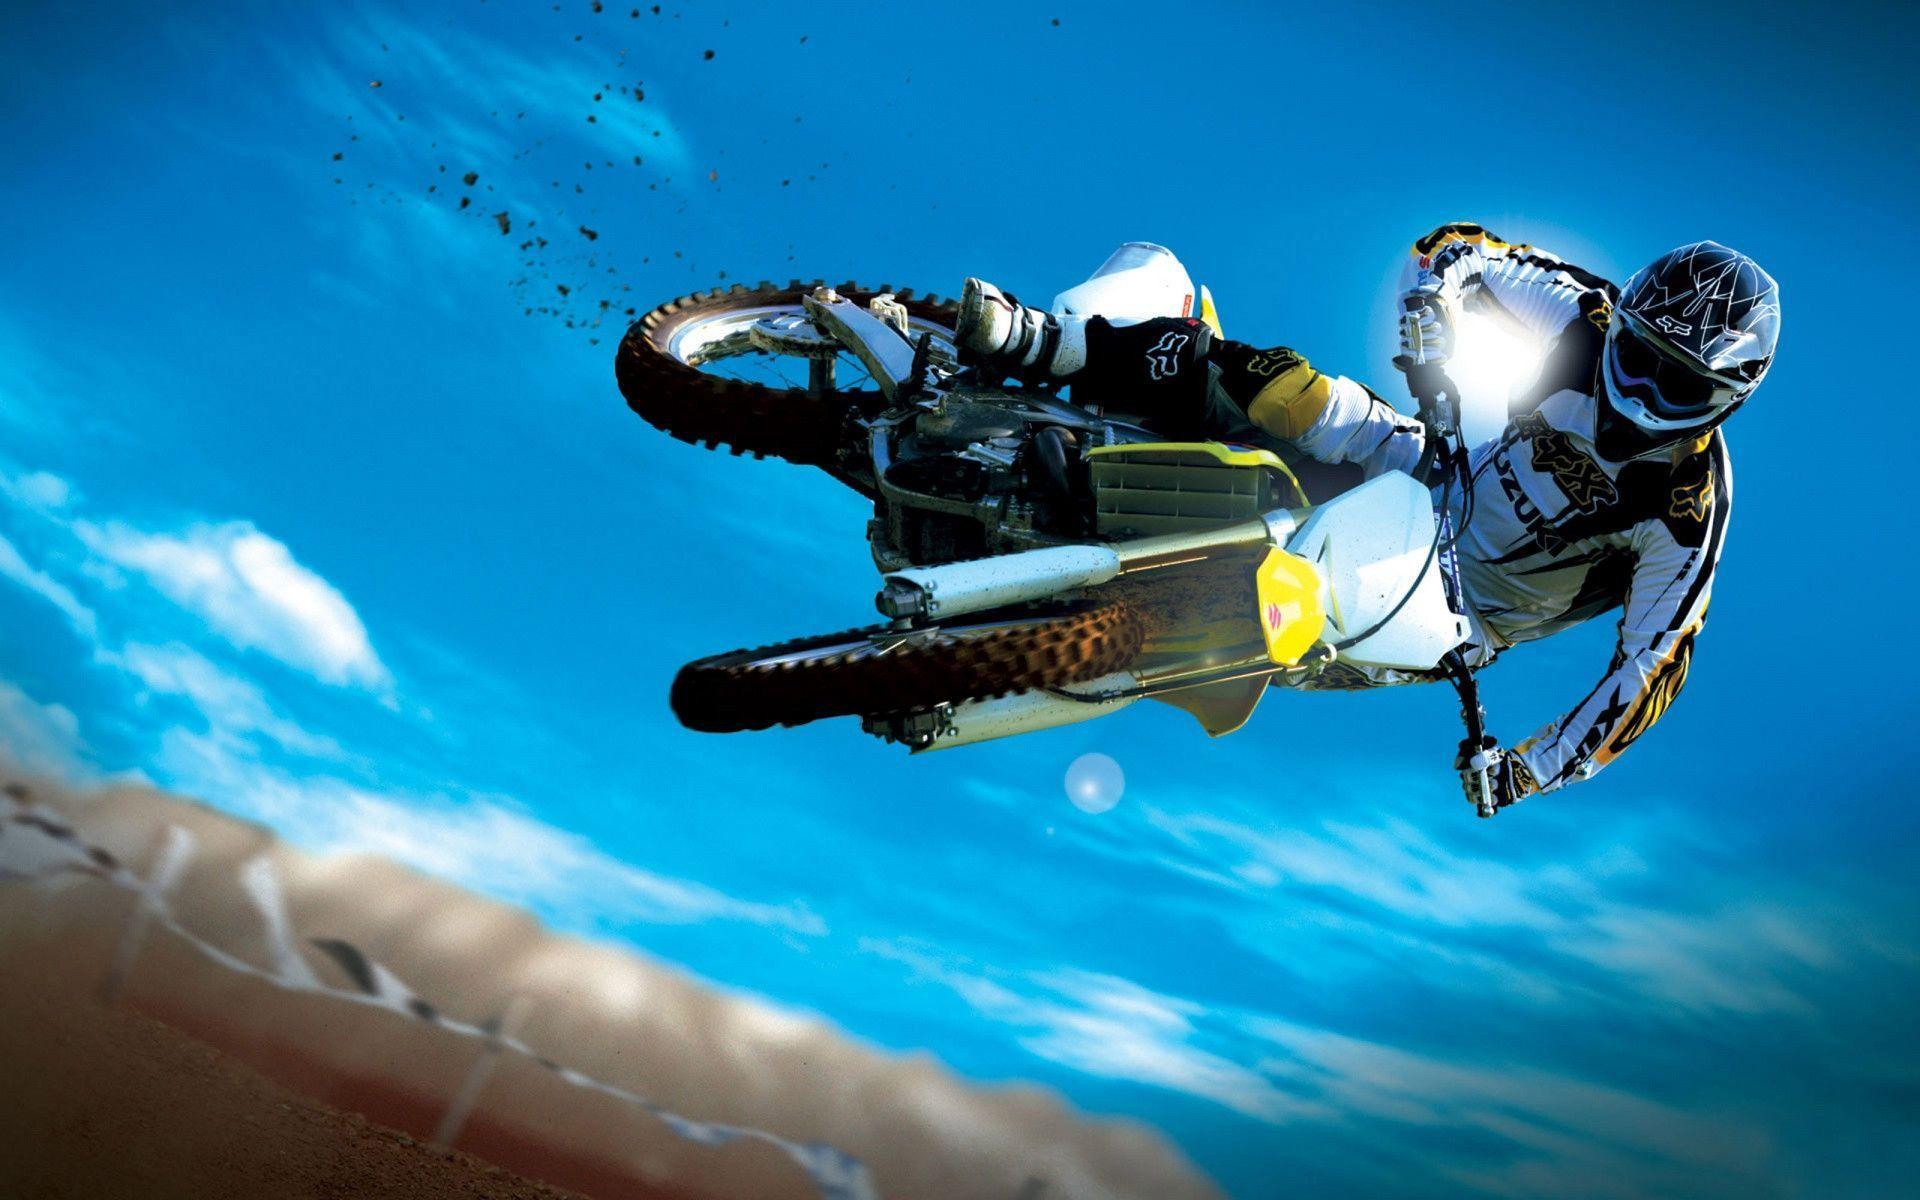 Motocross Jumps Wallpaper For Desk Full HD Wallpaper